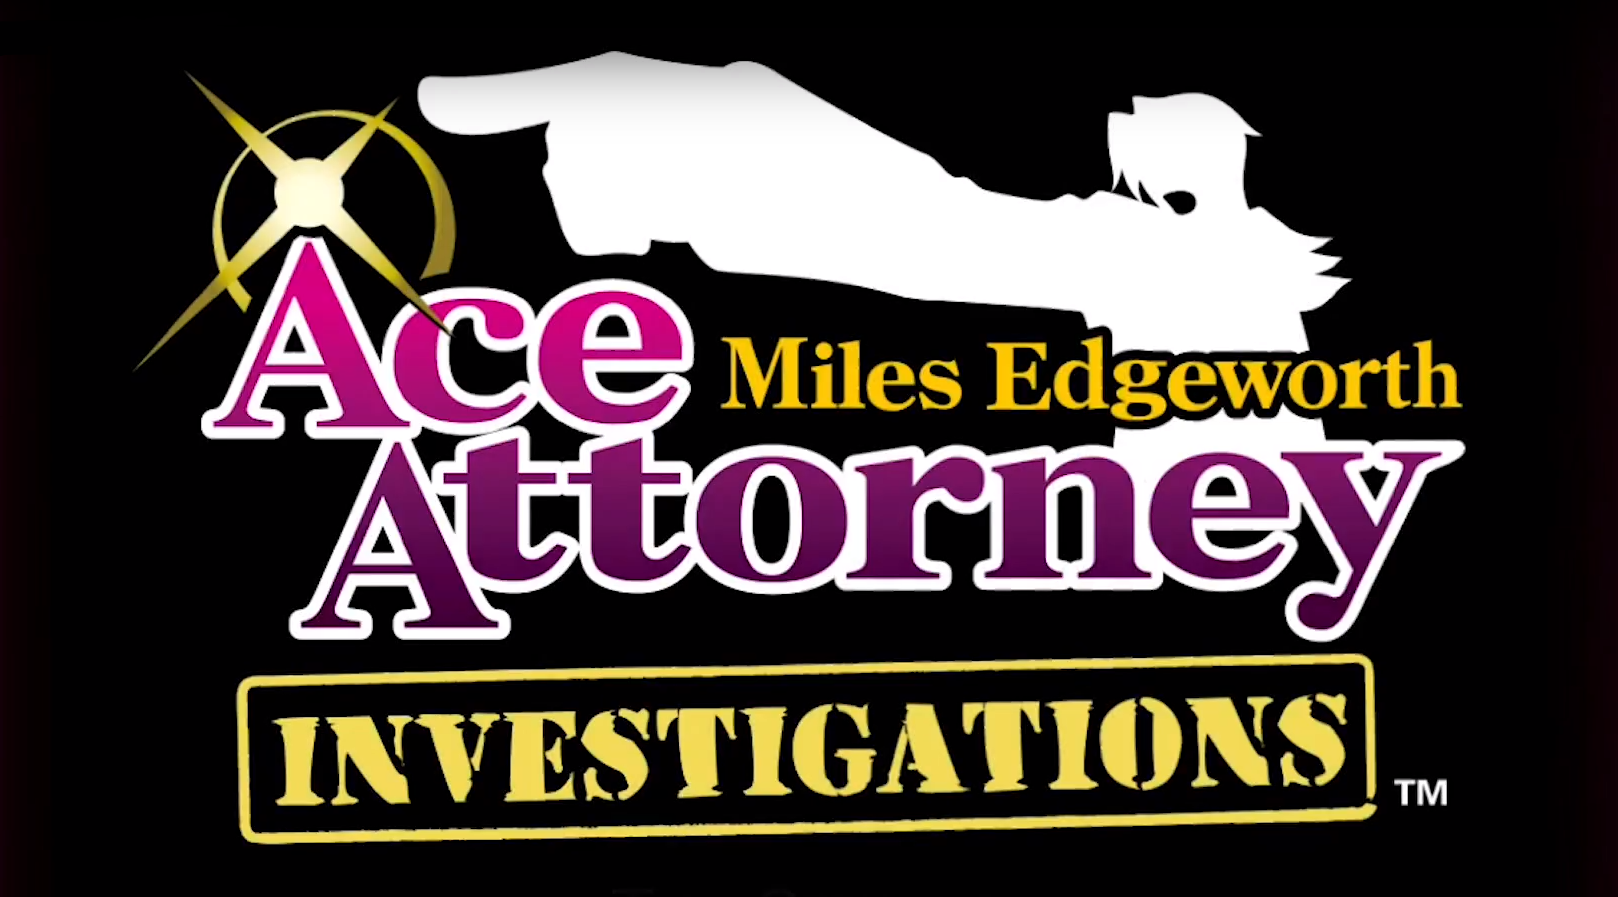 Miles investigation. Miles Edgeworth investigations. Miles Edgeworth investigations logo. Ace attorney investigations logo. Ace attorney logo.